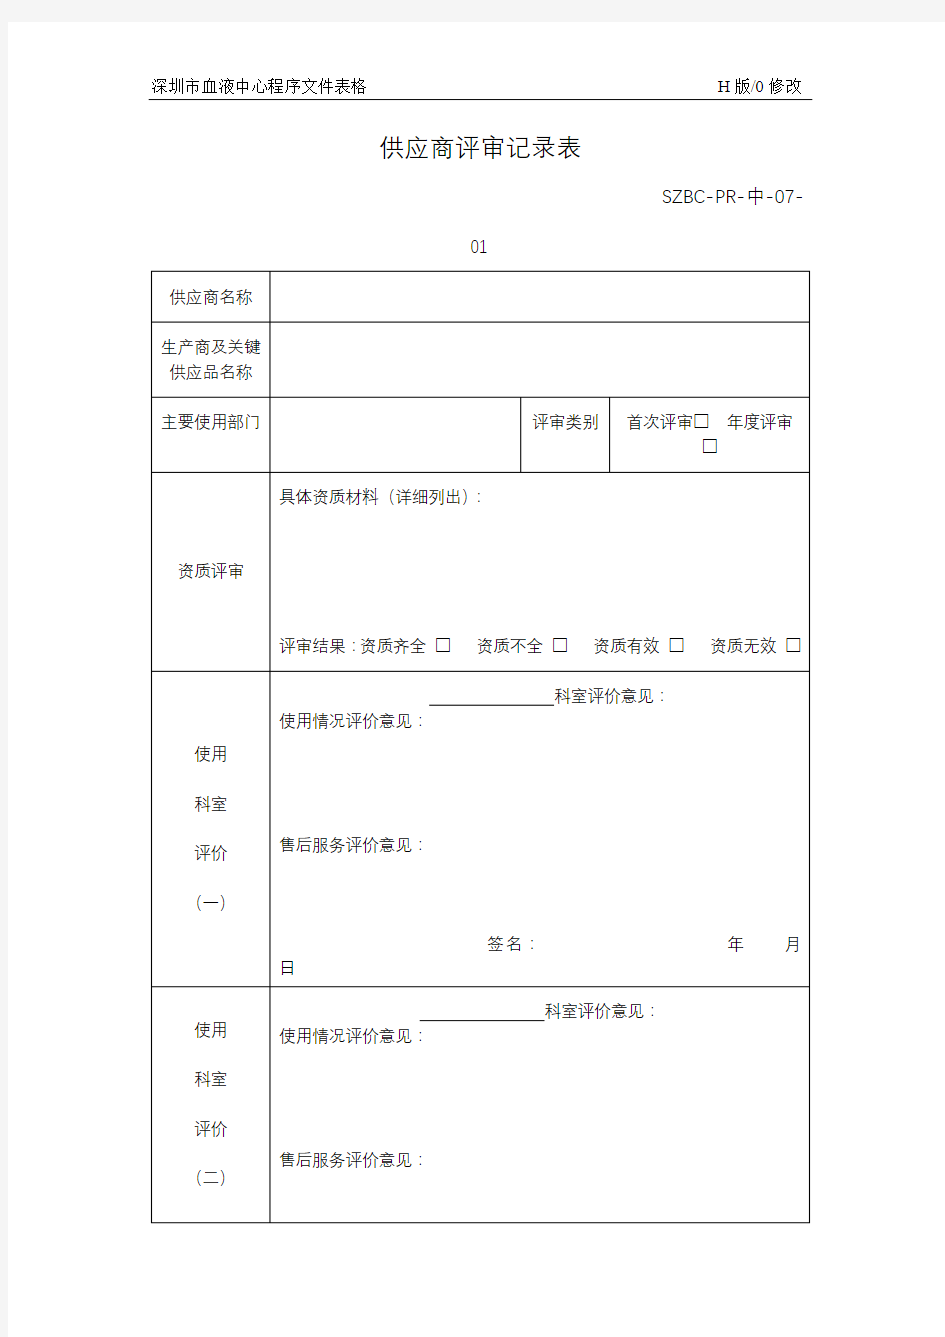 供应商评审记录表【模板】